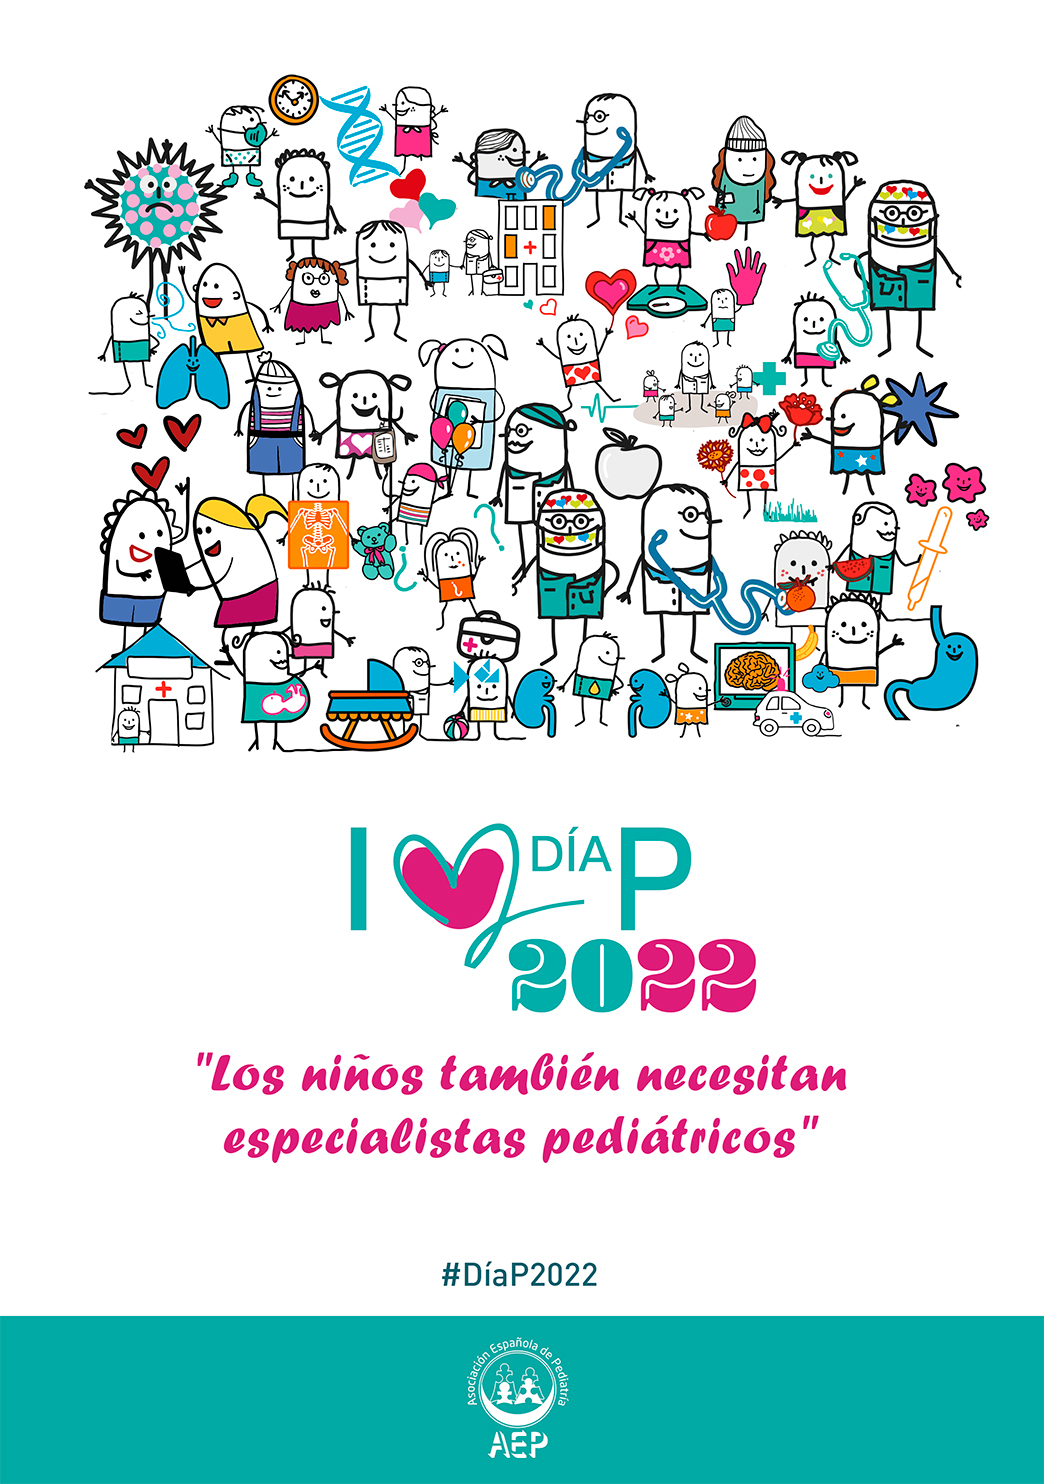 La AEP conmemora el Día de la Pediatría 2022